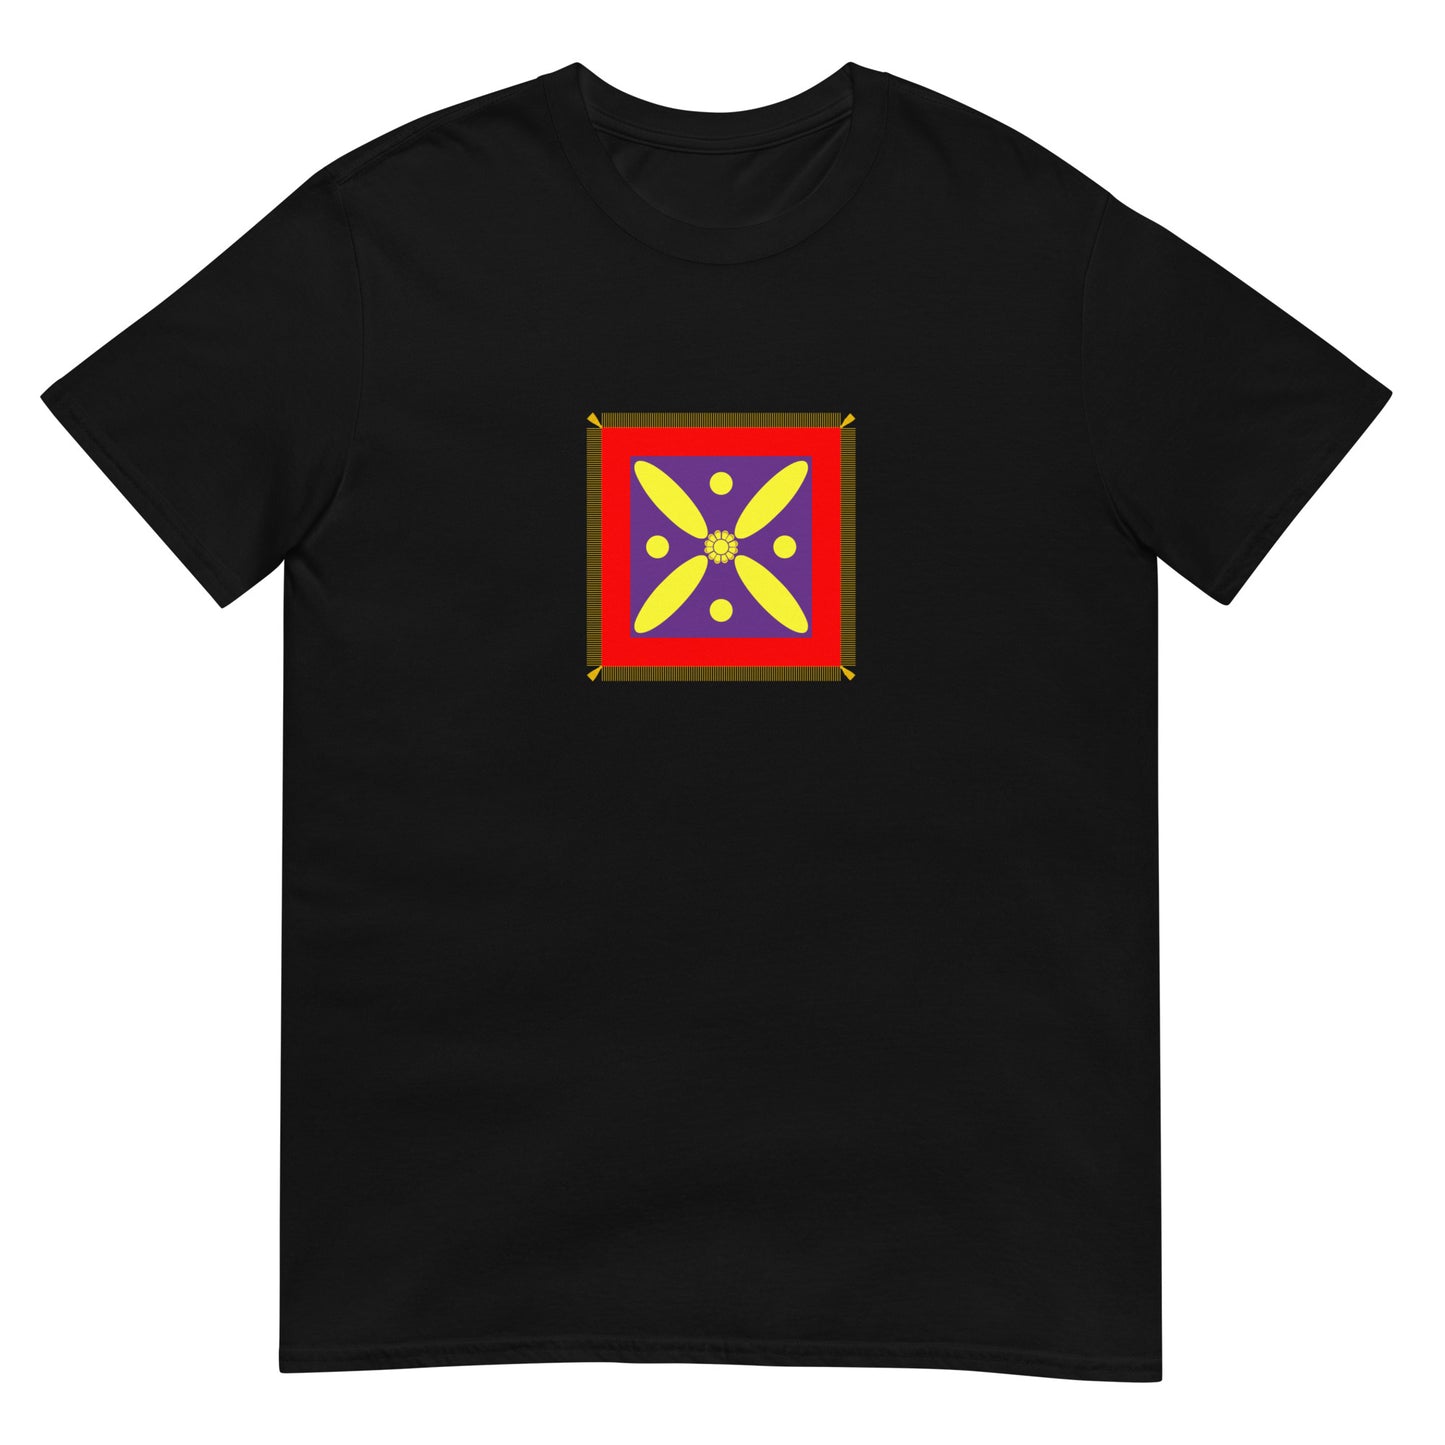 Iran - Sassanian Empire (224-651) | Iran Flag Interactive History T-Shirt